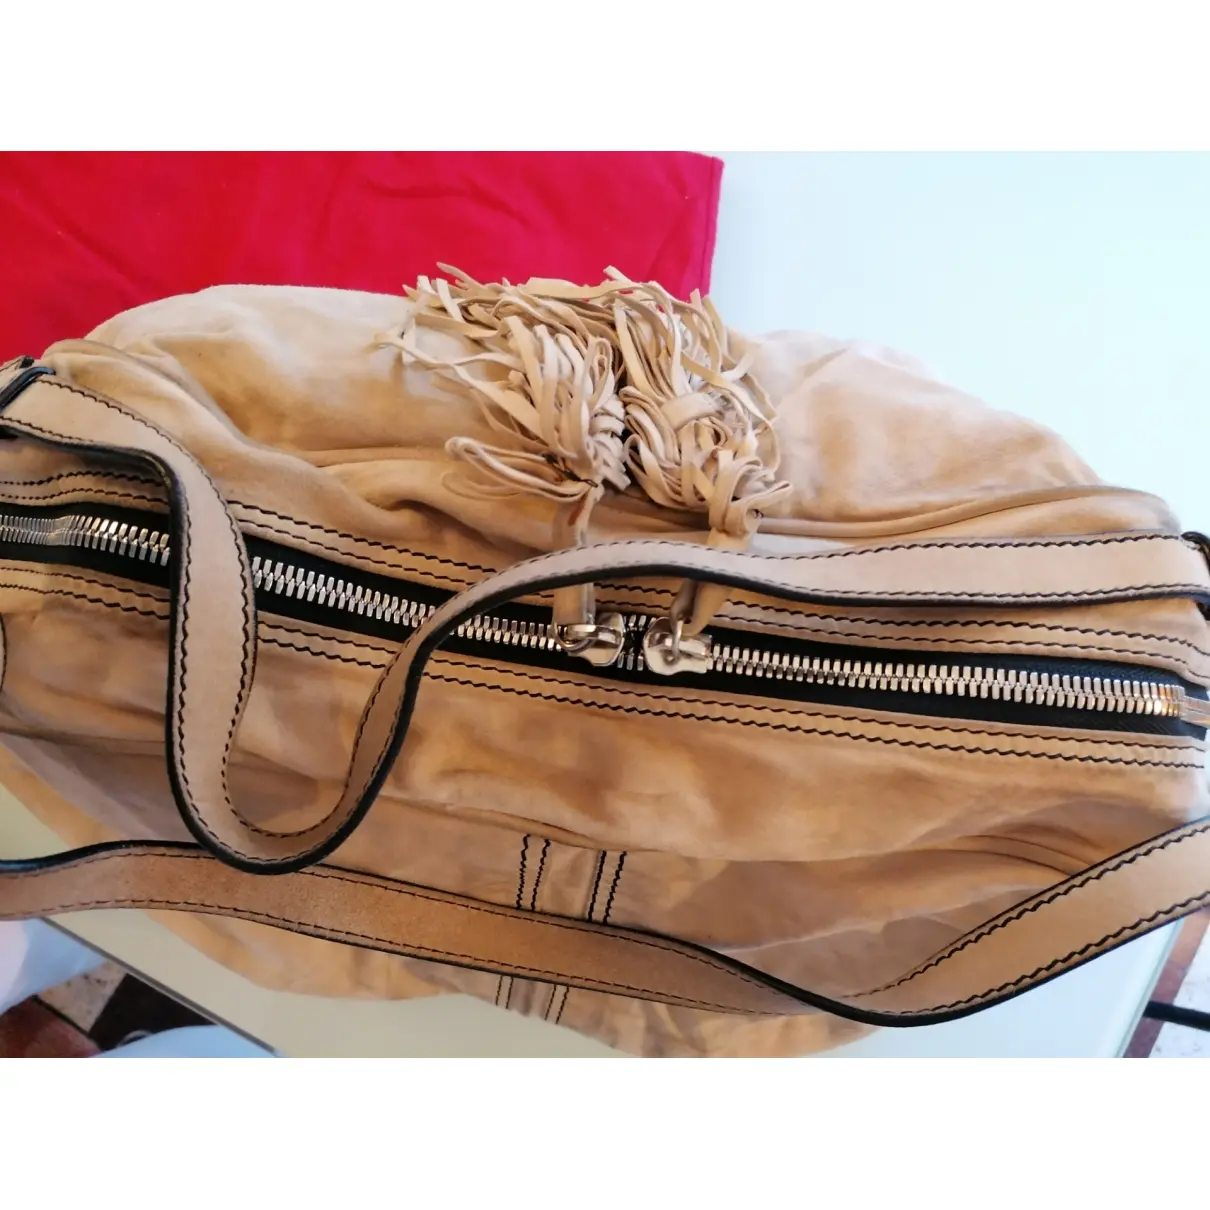 Handbag Valentino Garavani - Vintage